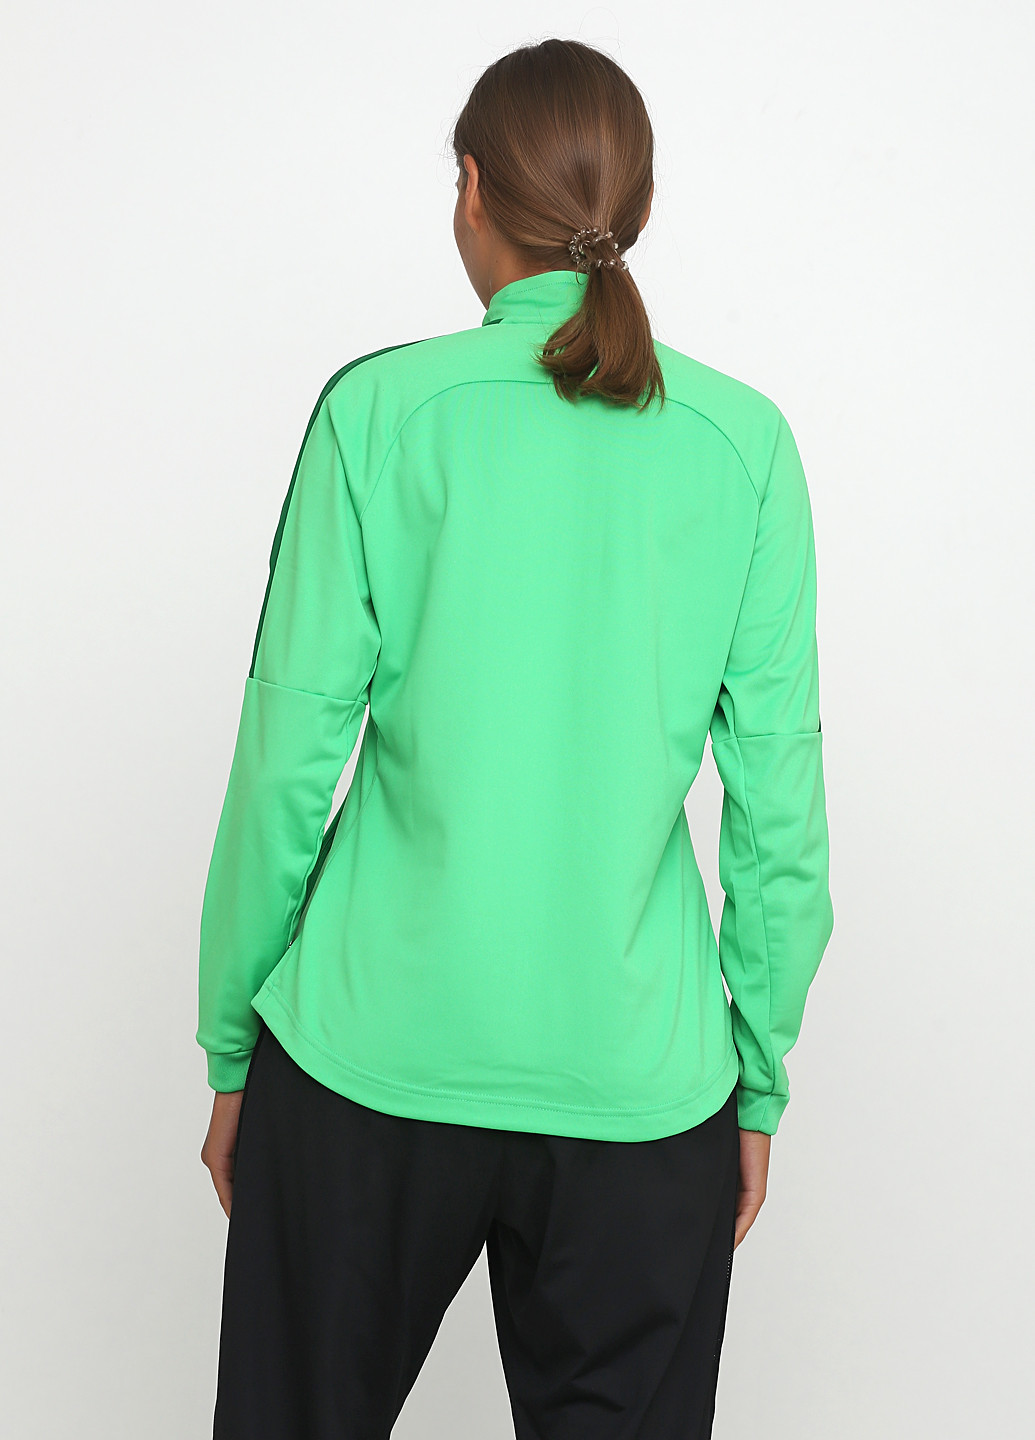 Олімпійка Nike knit track jacket w o m e n ’ s a c a d e m y 1 8 (187143756)